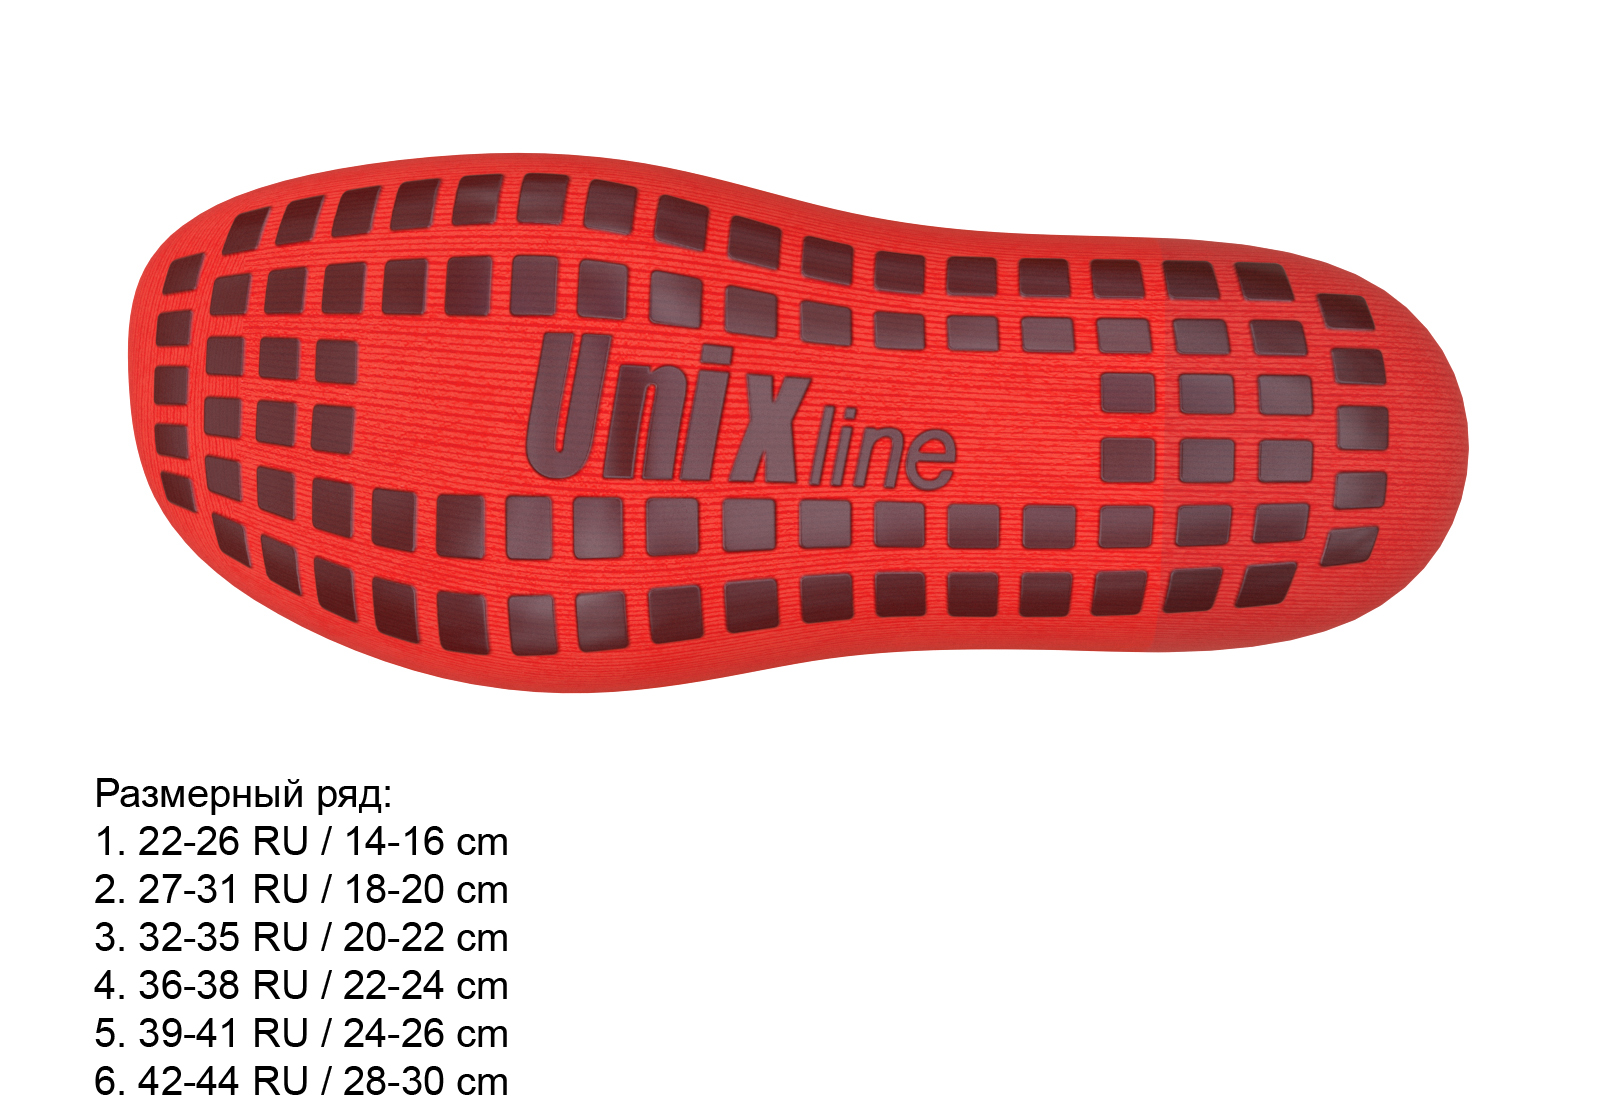 Носки для батута UNIX line (39-41 RU / 24-26 cm)